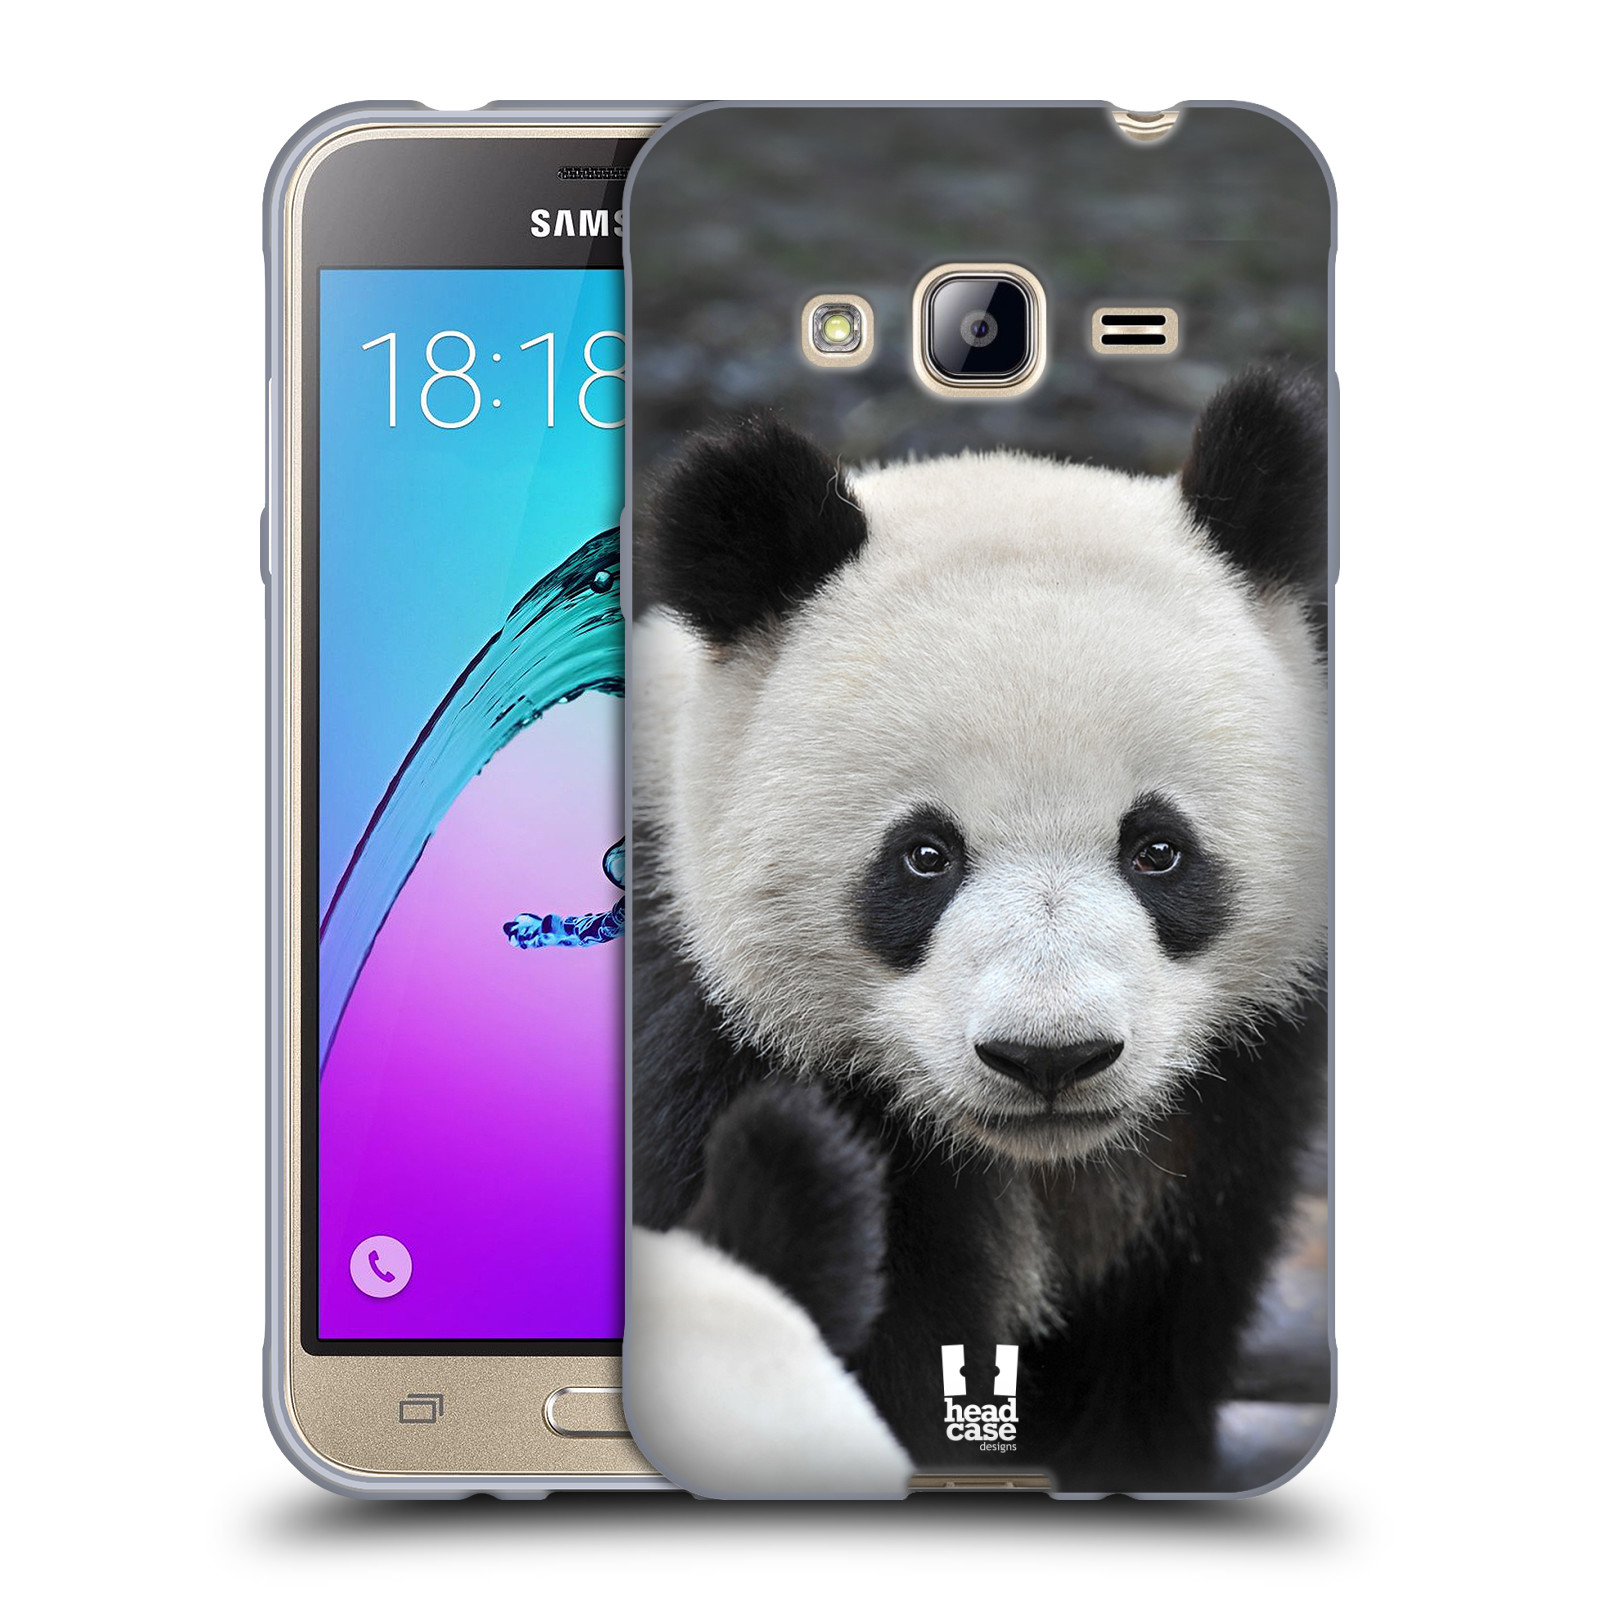 HEAD CASE silikonový obal na mobil Samsung Galaxy J3, J3 2016 vzor Divočina, Divoký život a zvířata foto MEDVĚD PANDA